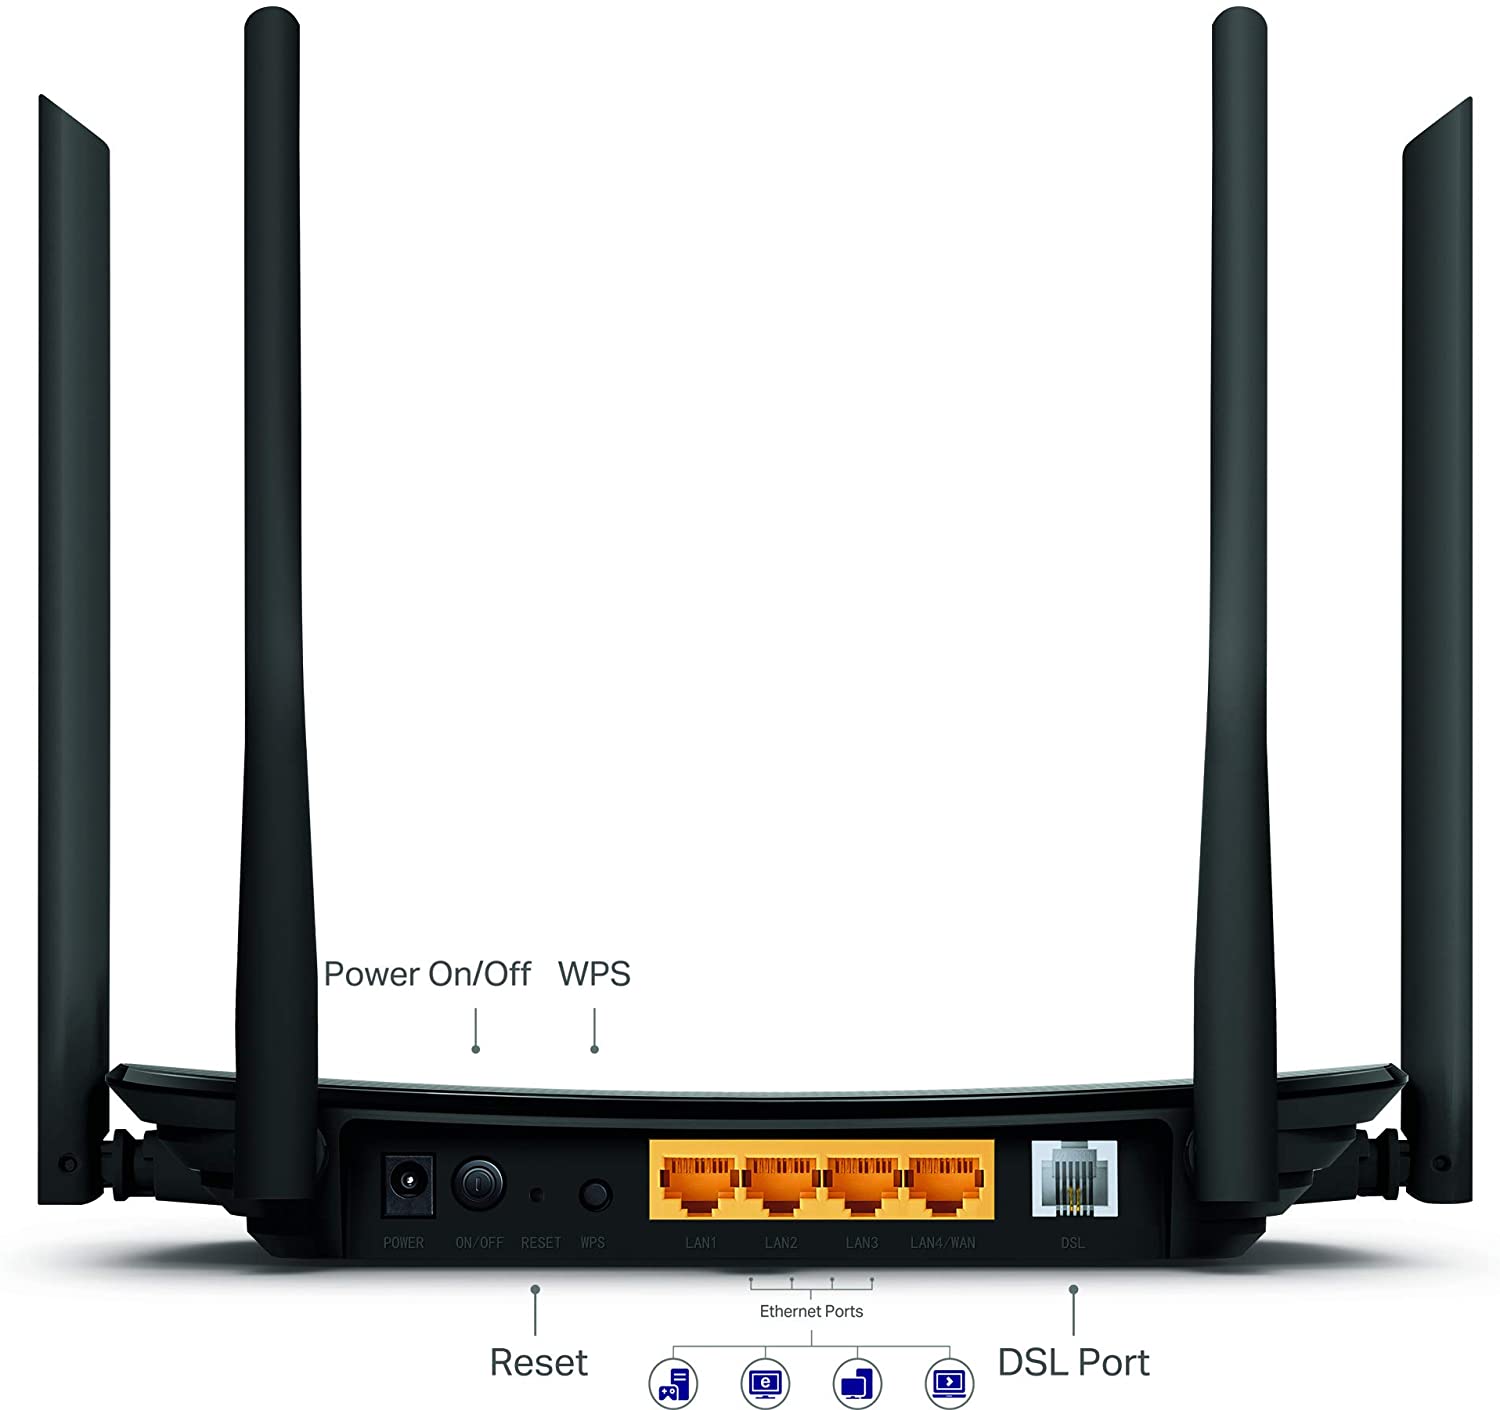 TP-Link Wireless VDSL-ADSL Modem Router, Black, Archer VR300